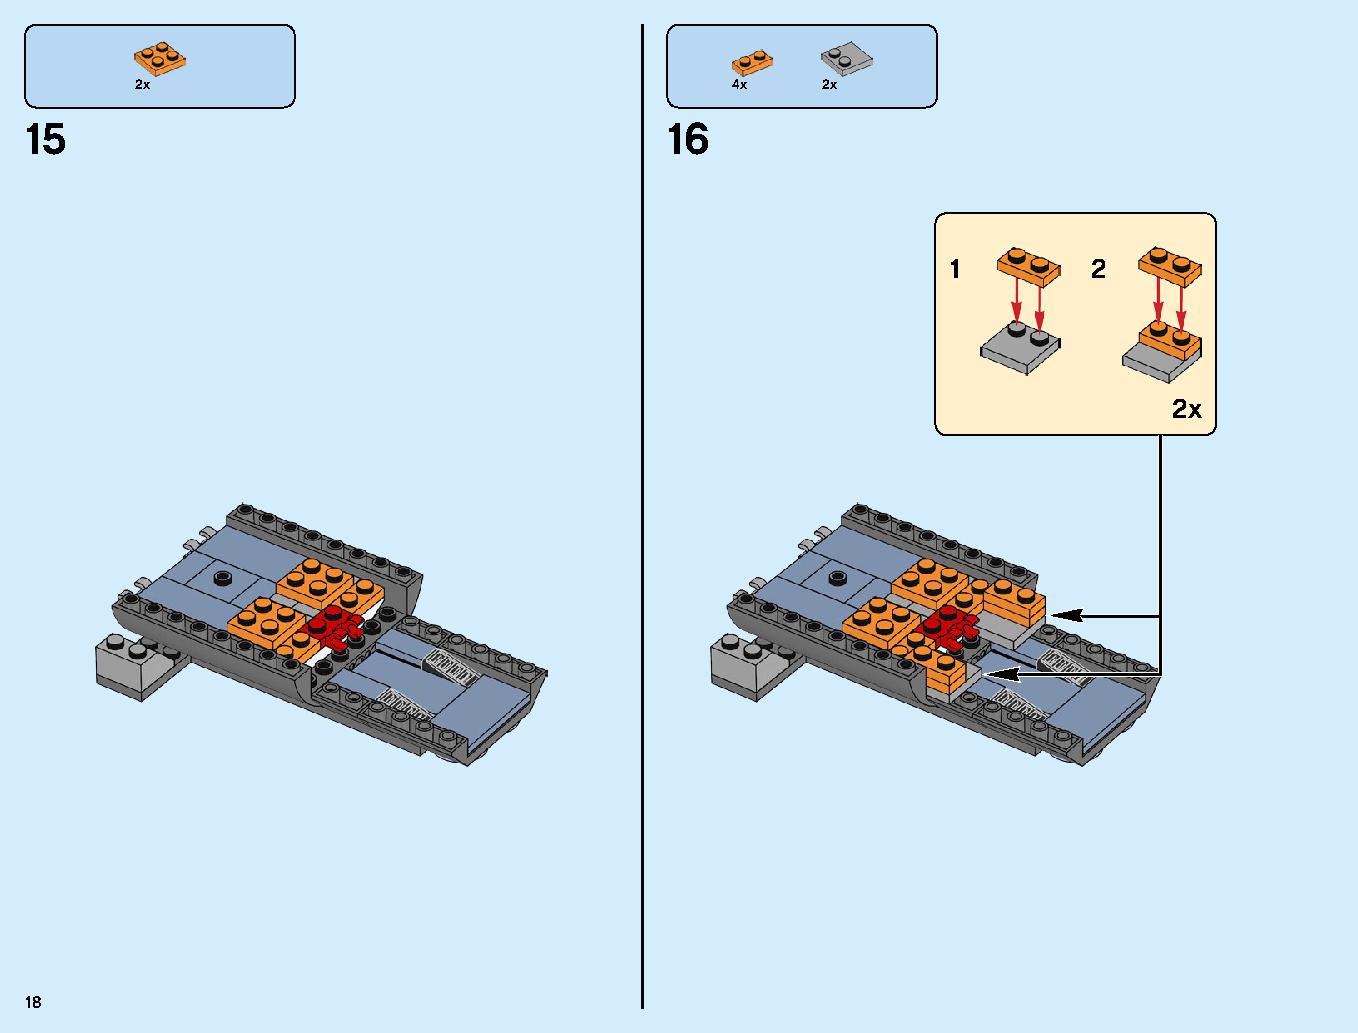 어벤져스 타노스: 최후의 전투 76107 레고 세트 제품정보 레고 조립설명서 18 page